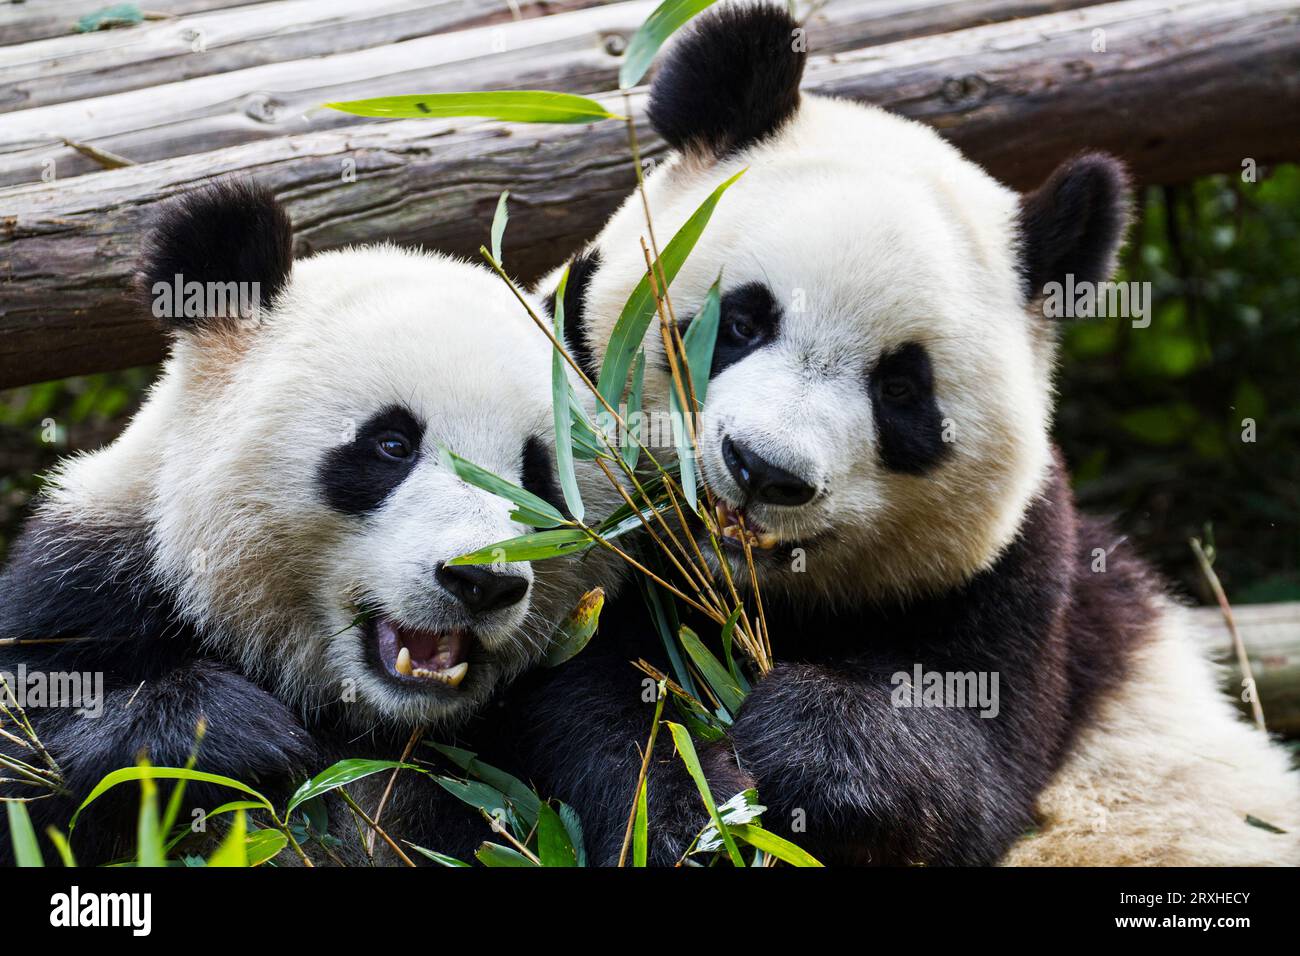 Deux pandas géants (Ailuropoda melanoleuca) au Panda Research Center, Chengdu, Chine Banque D'Images